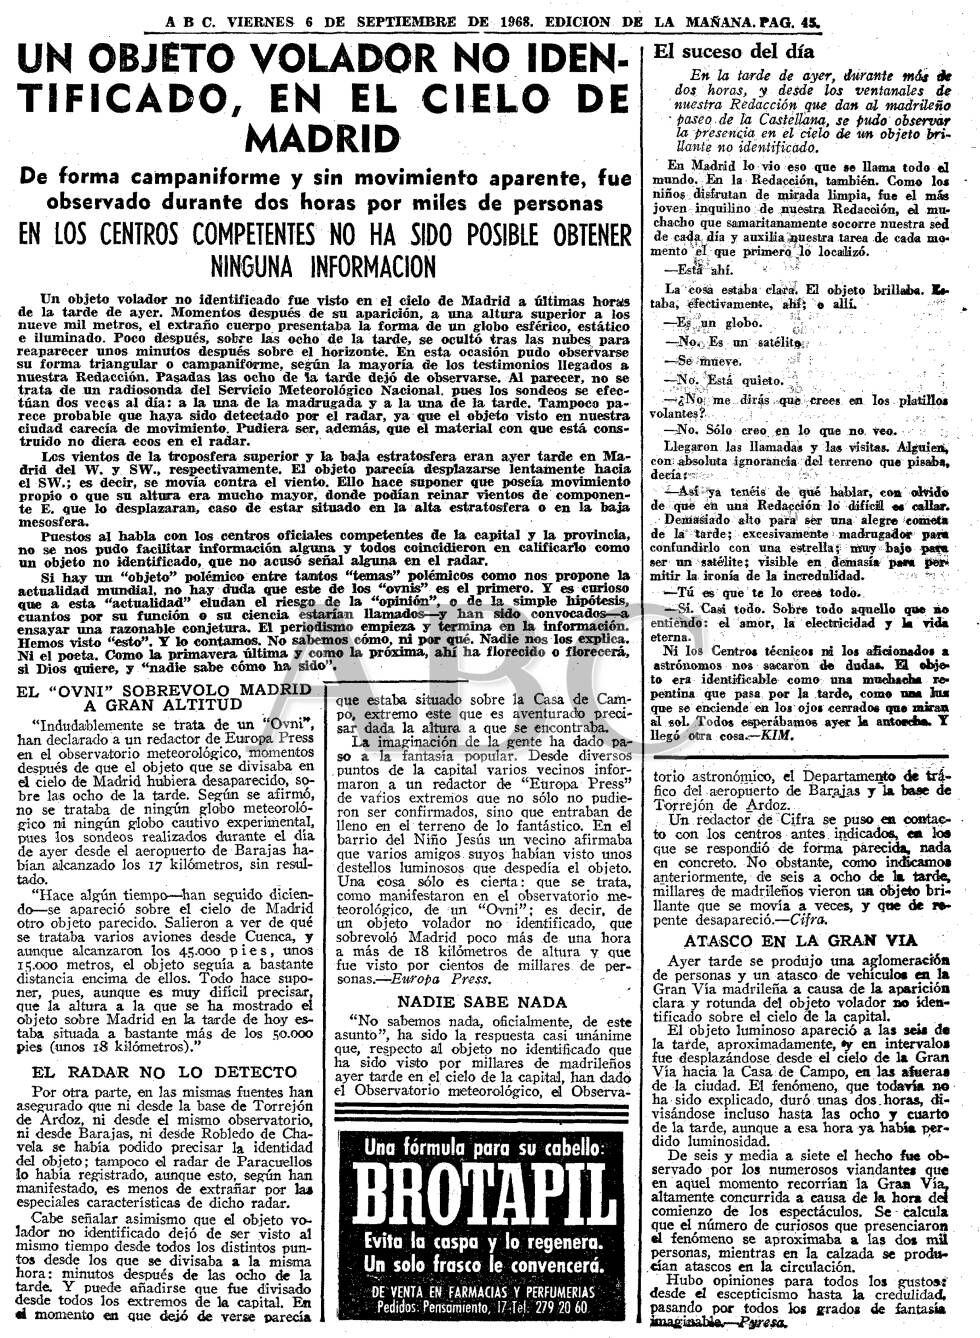 Noticias del periódico ABC del día 6 de septiembre de 1968, sobre otro supuesto Ovni que habría sobrevolado la Gran Vía de Madrid. La noticia puede consultarse en <a href=